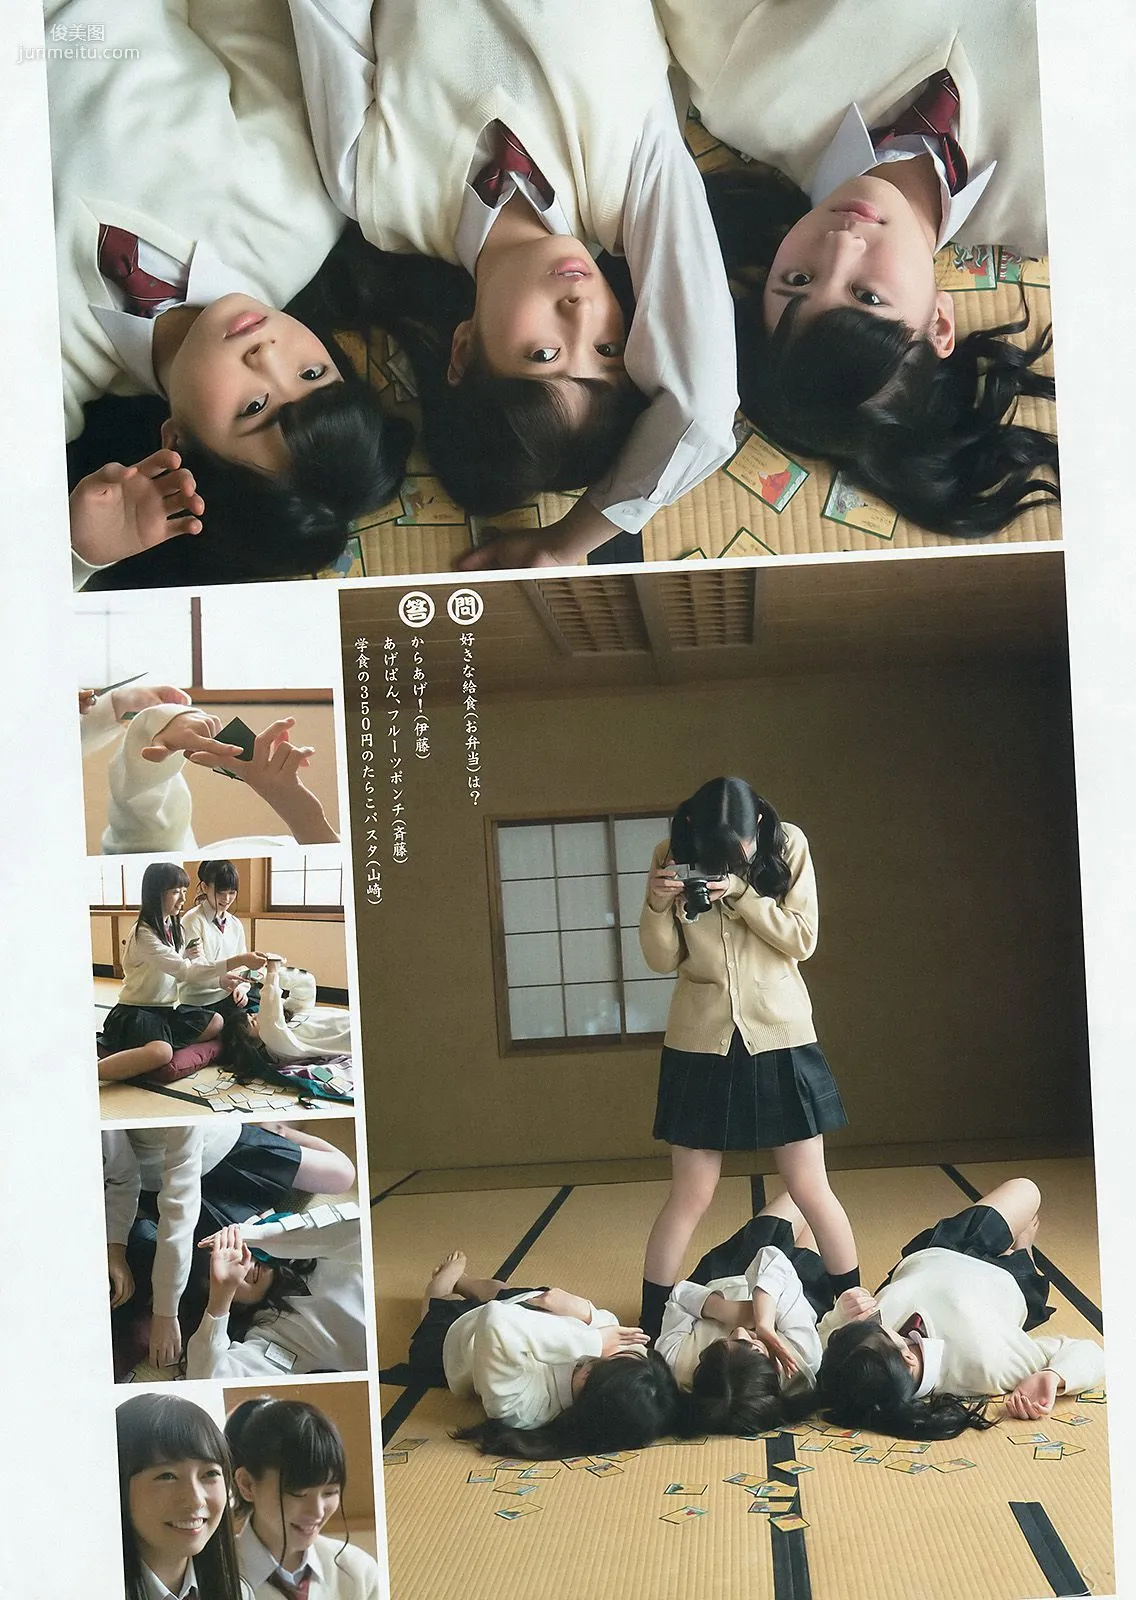 乃木坂46アンダーメンバー《私立乃木坂アンダー学園》 [Weekly Young Jump] 2015年No.19 写真杂志25